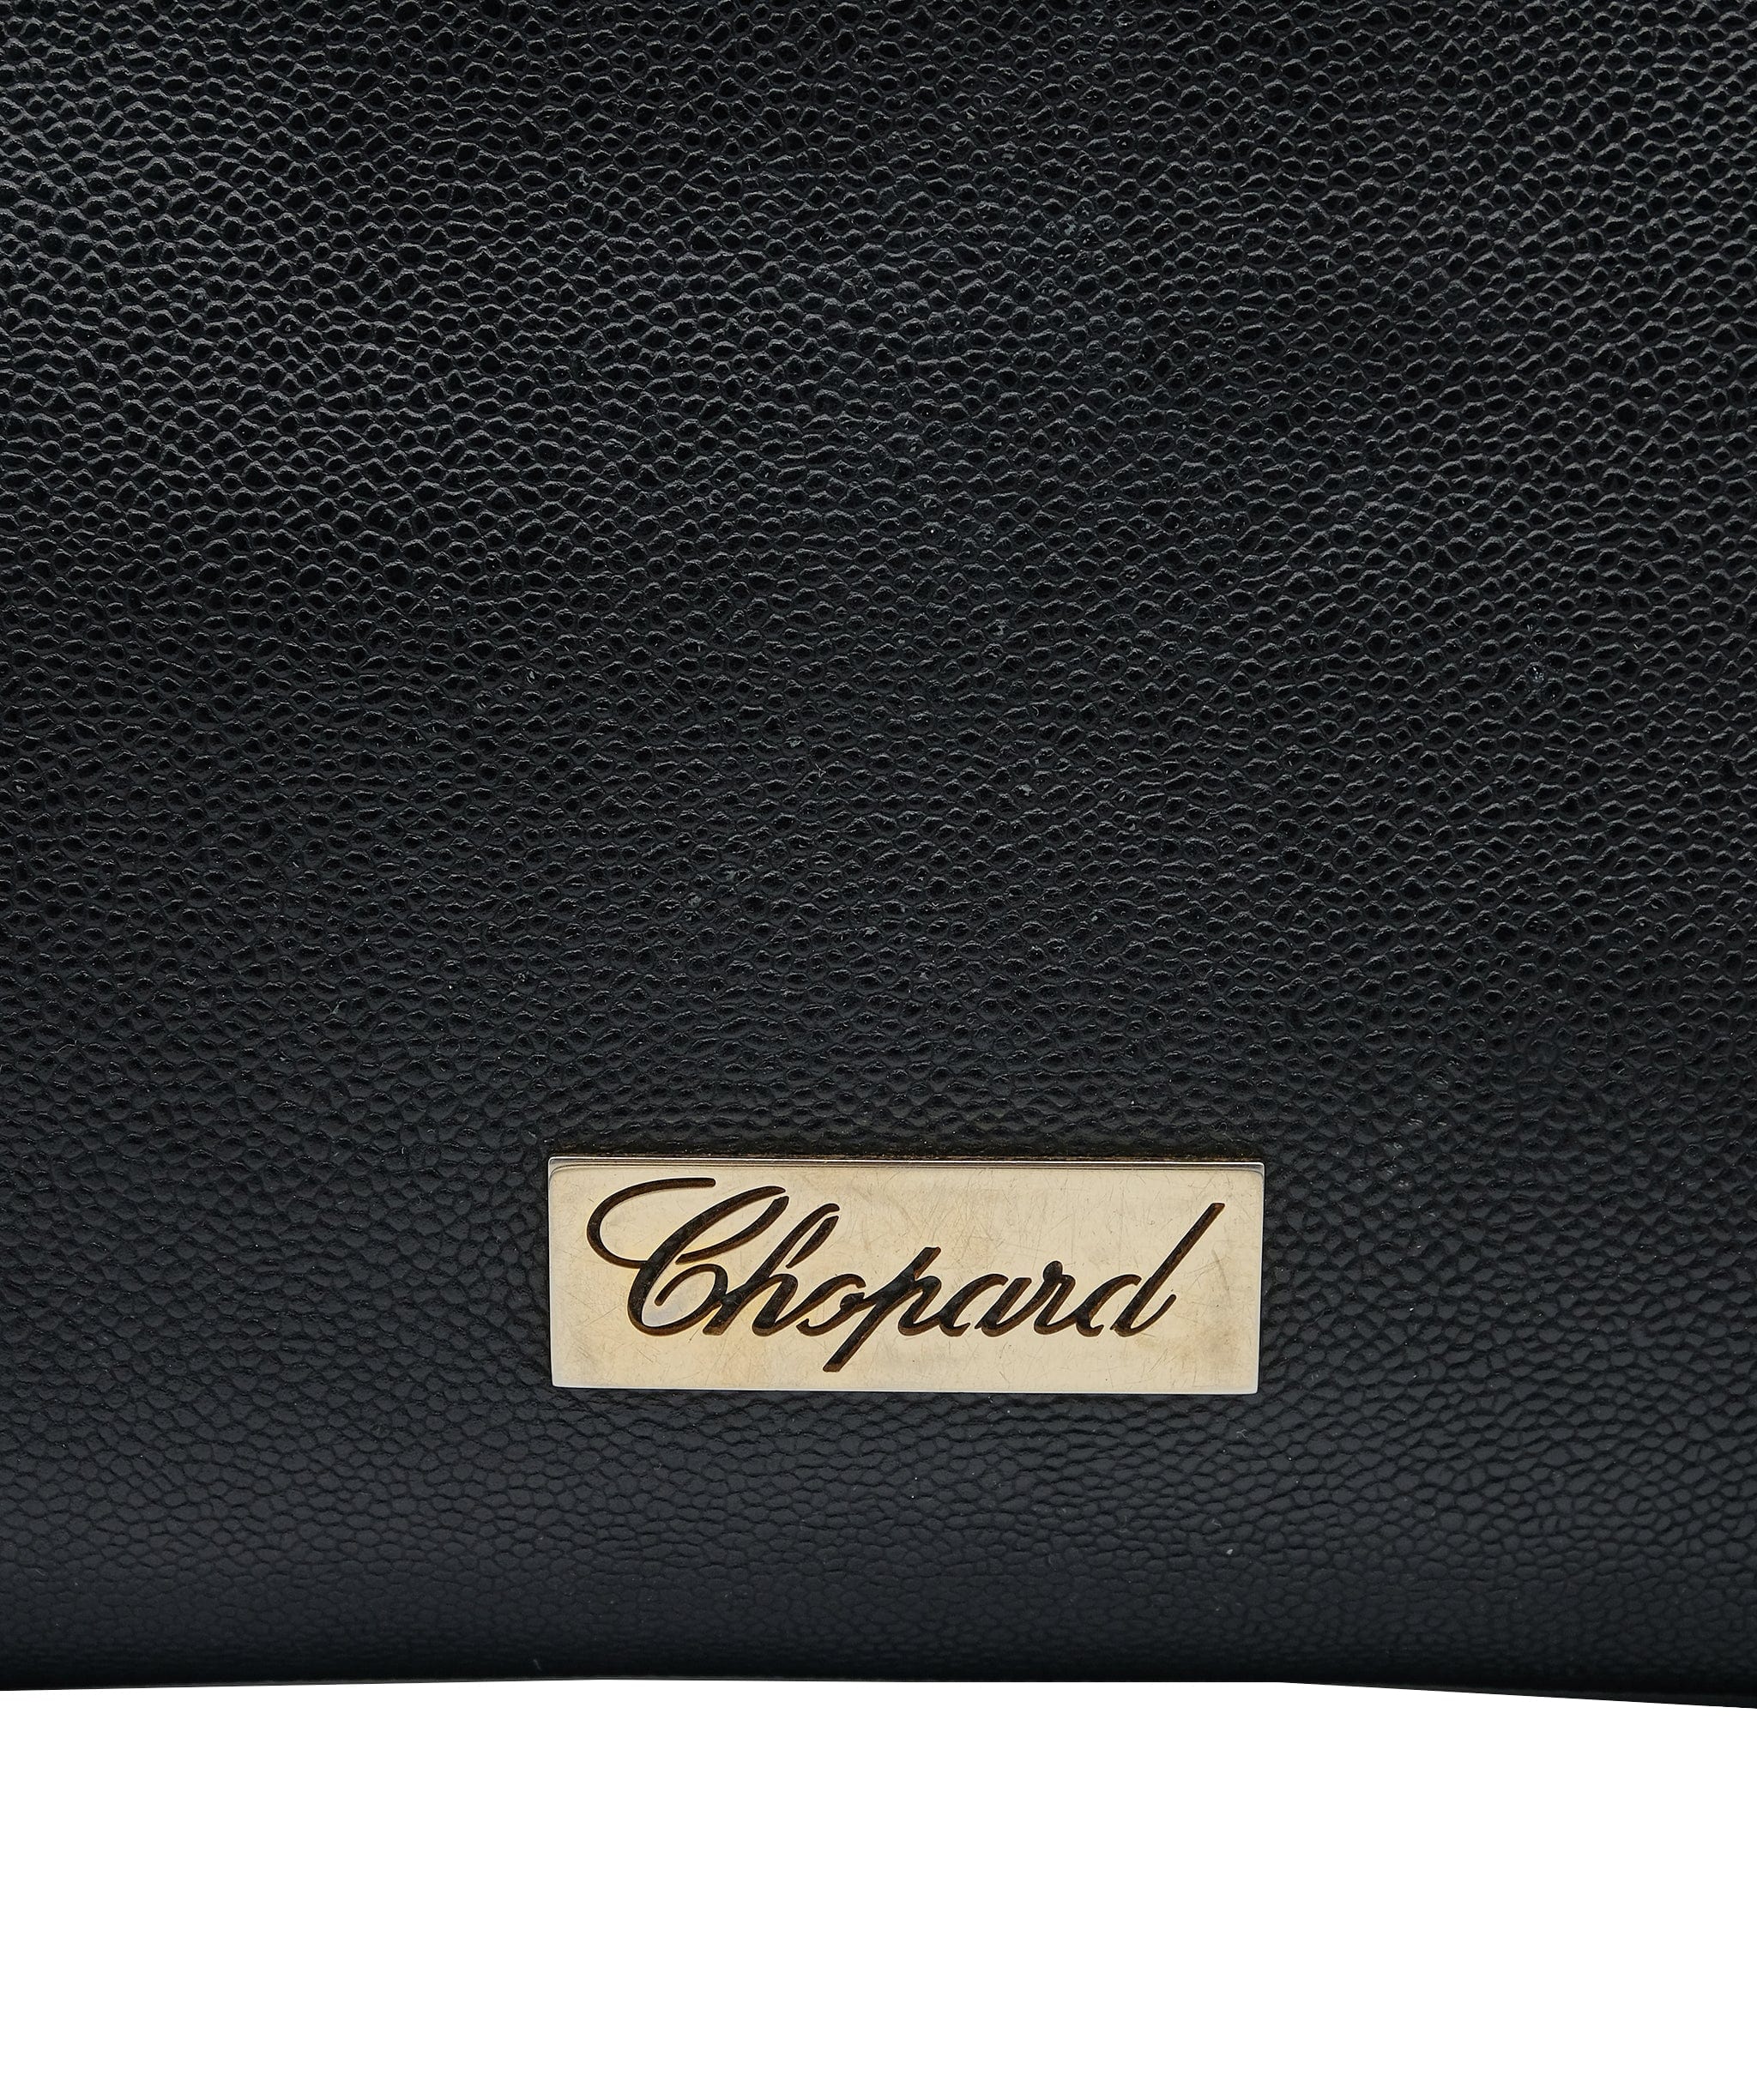 Chopard Chopard Crossbody Bag REC1458